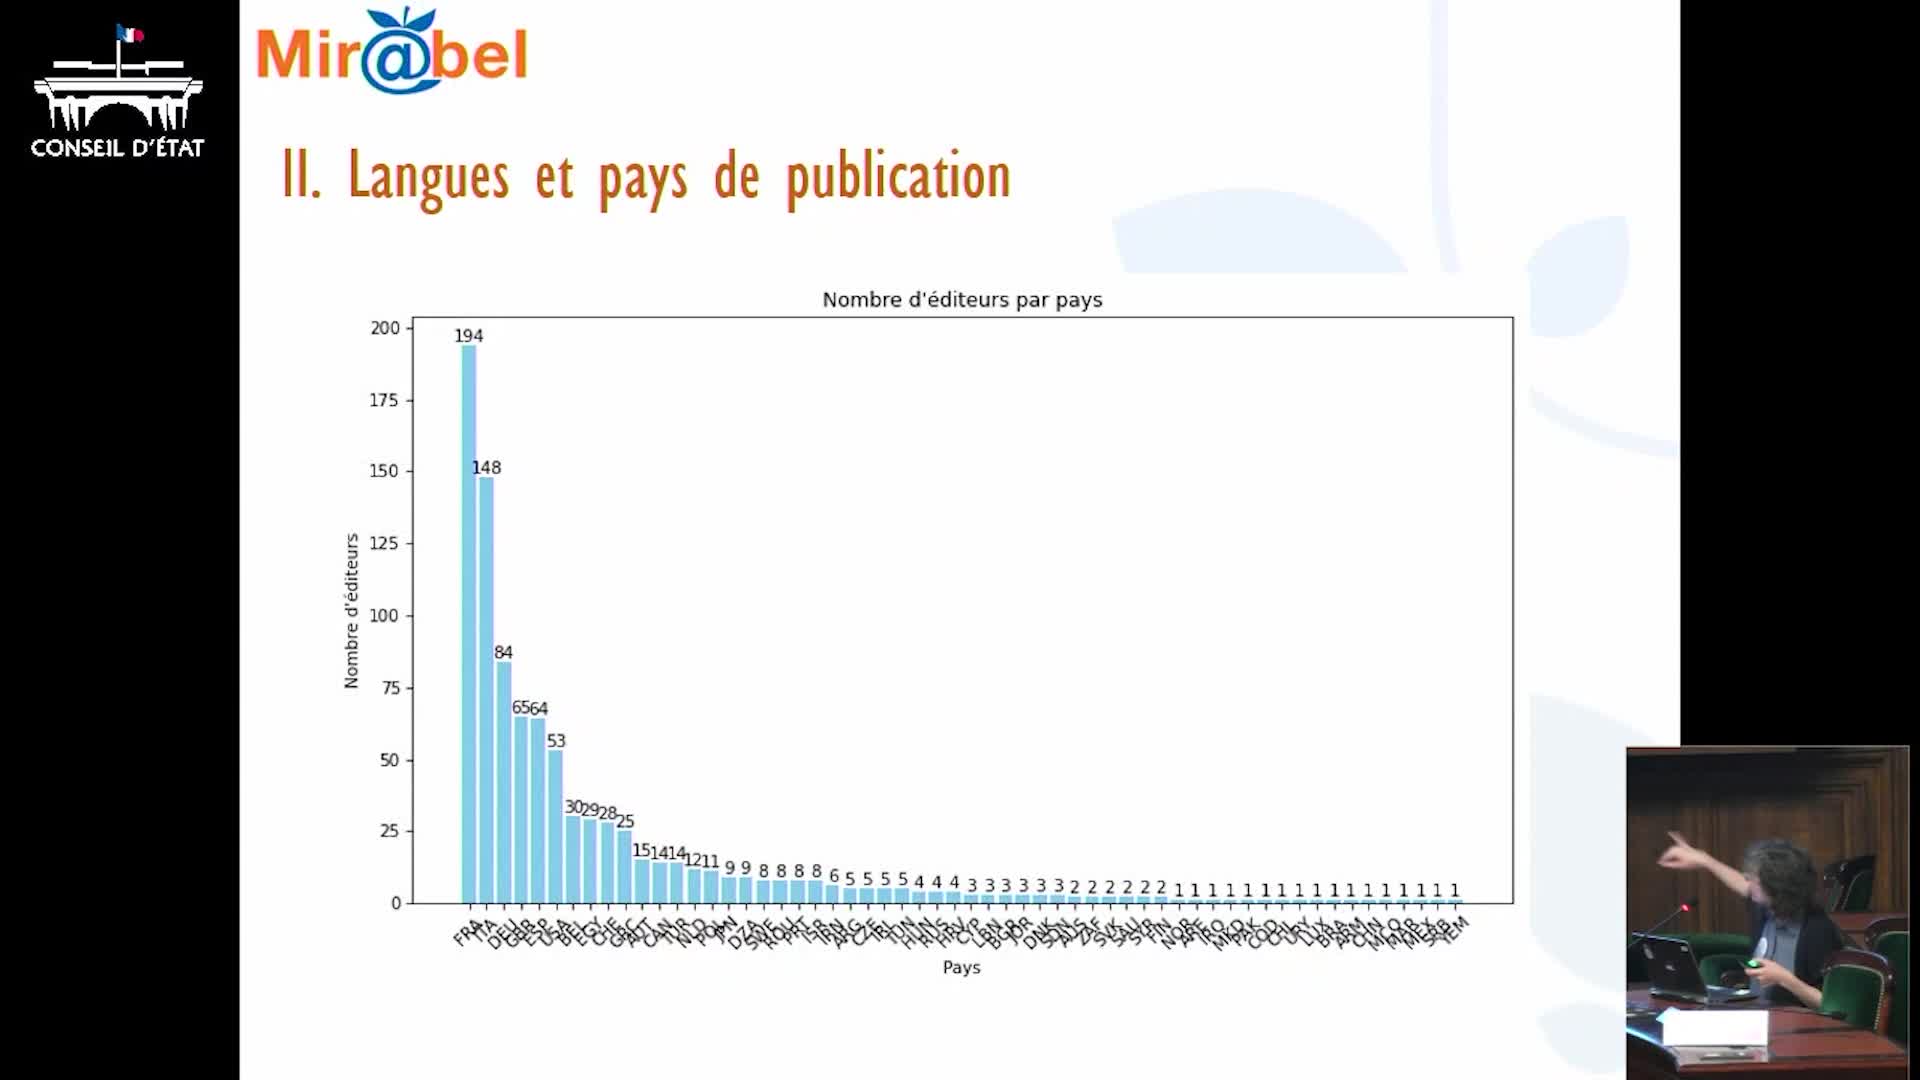 Projet Rev@ntiq : représentations graphiques des données de Mir@bel sur un corpus de revues